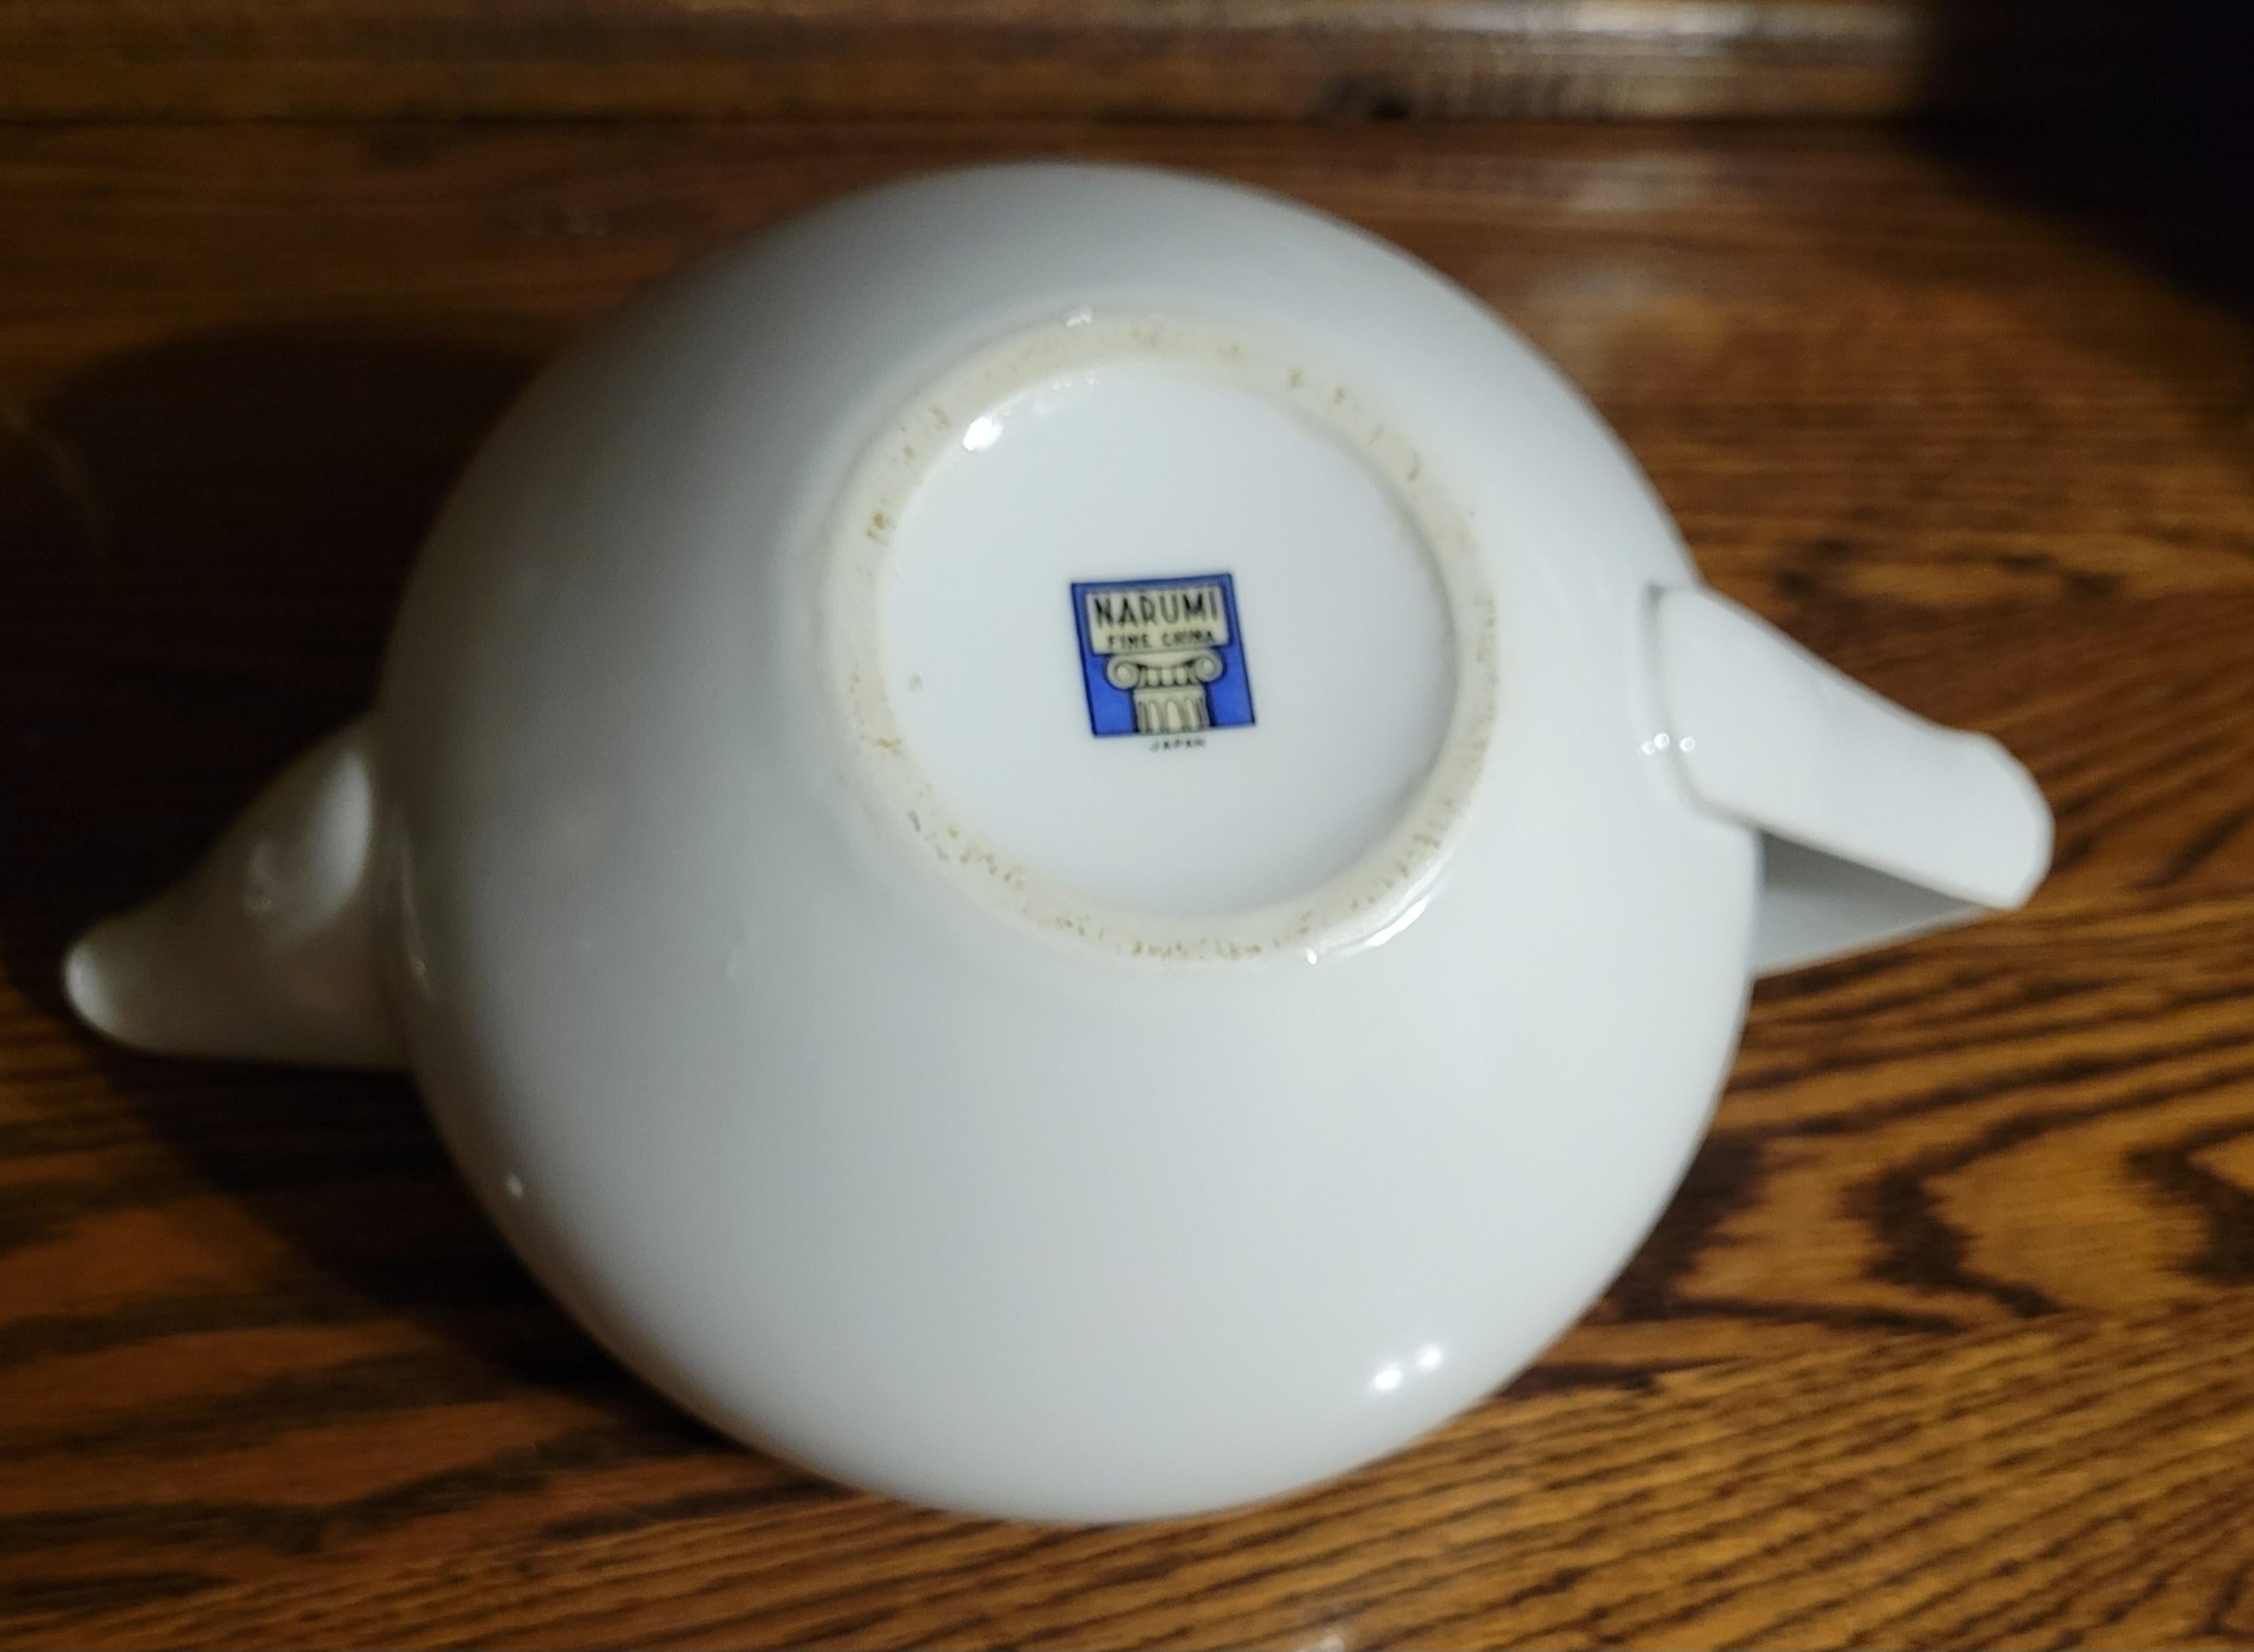 Seltene, 1940-1950 Narumi Victory Rose Teekanne. Die Teekanne hat einen Durchmesser von etwa 20